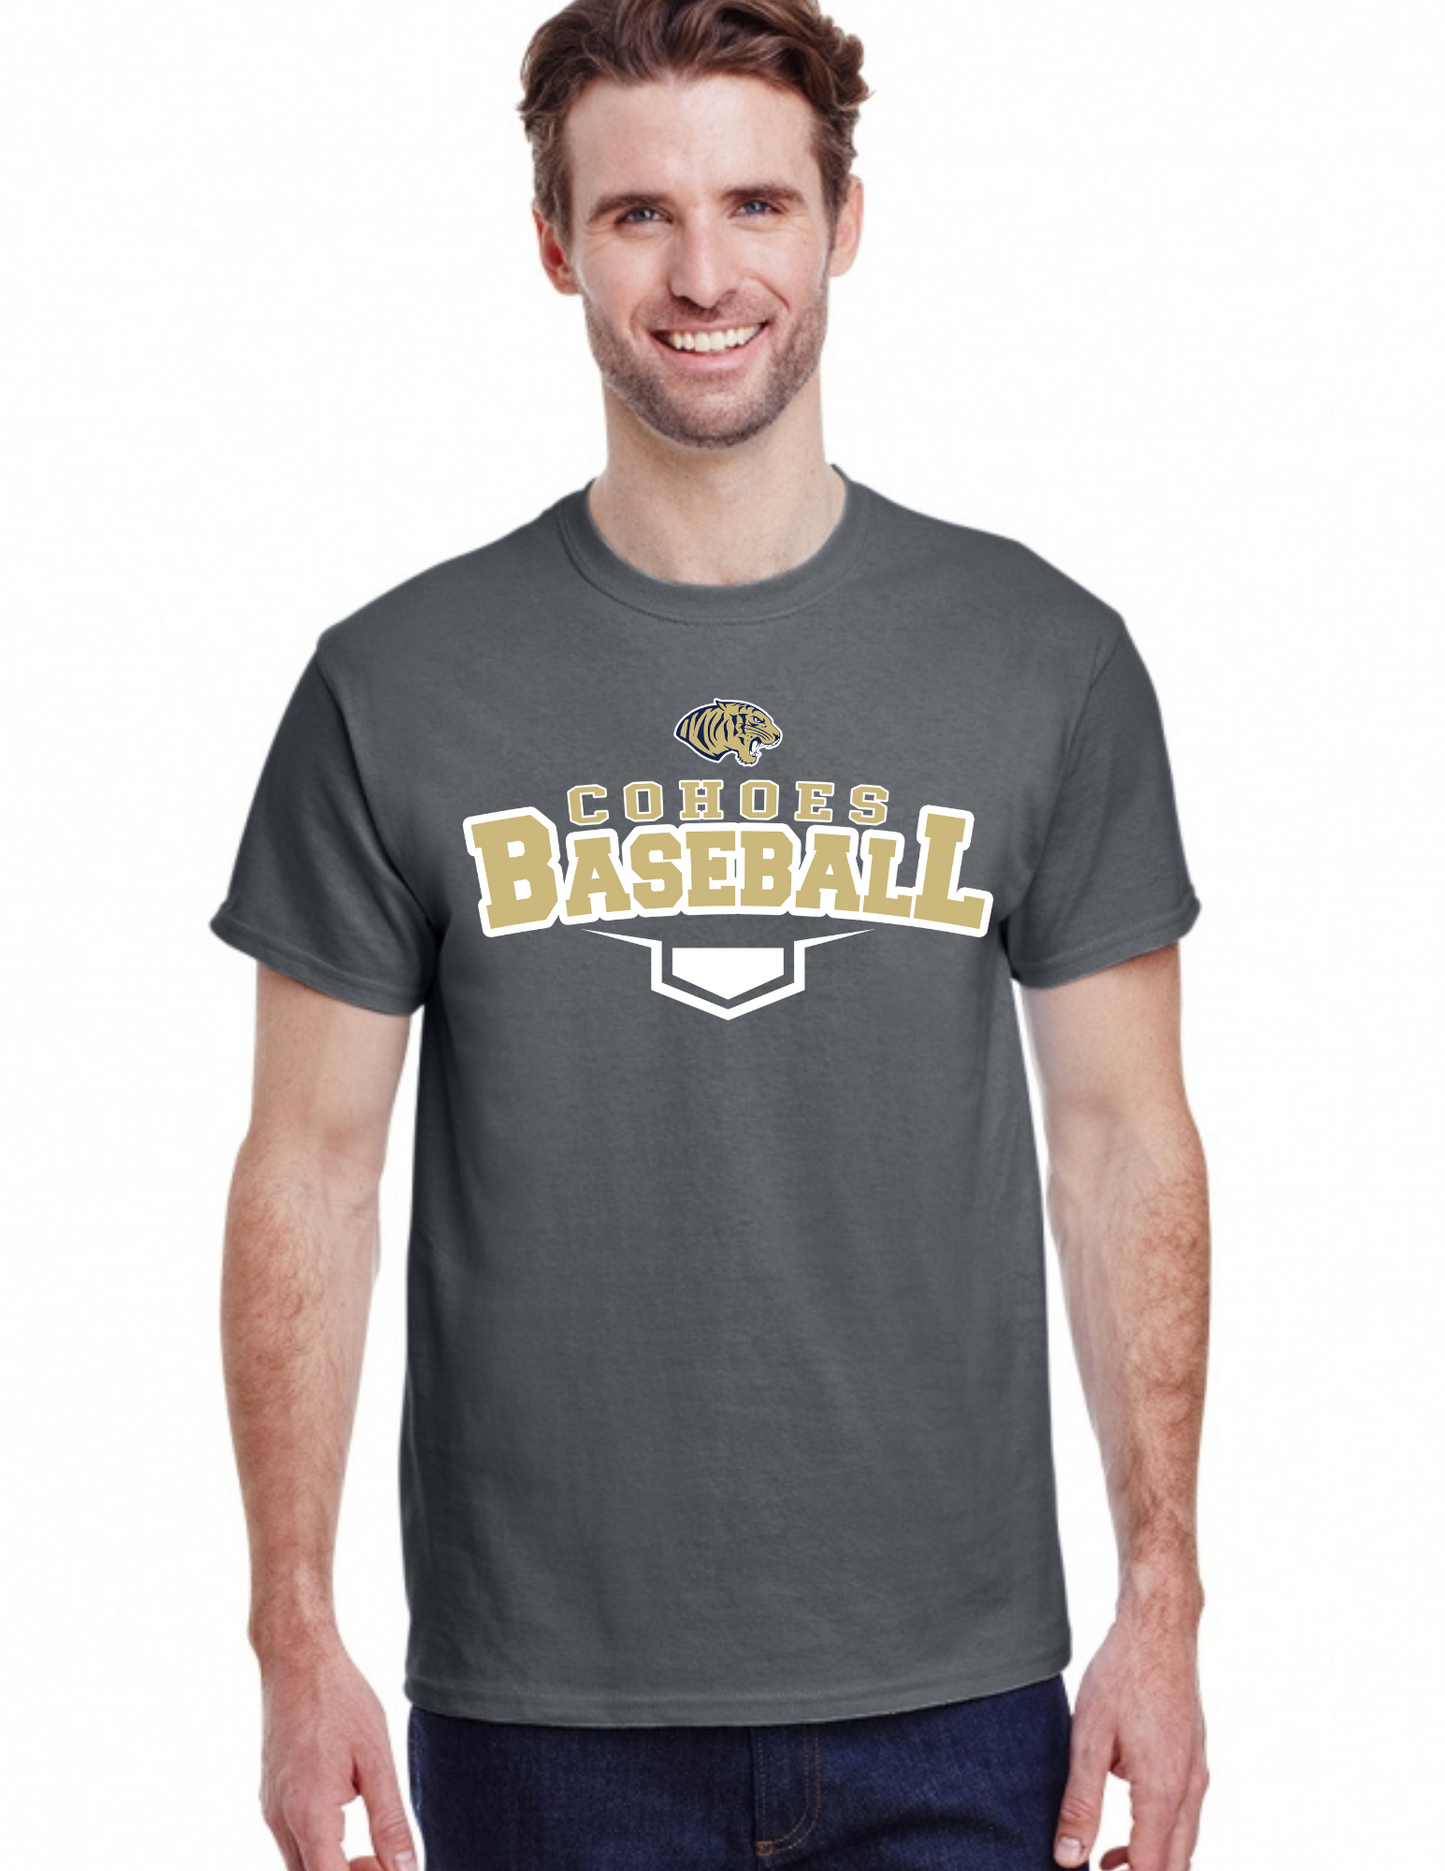 Tigers Baseball Retro T Shirt